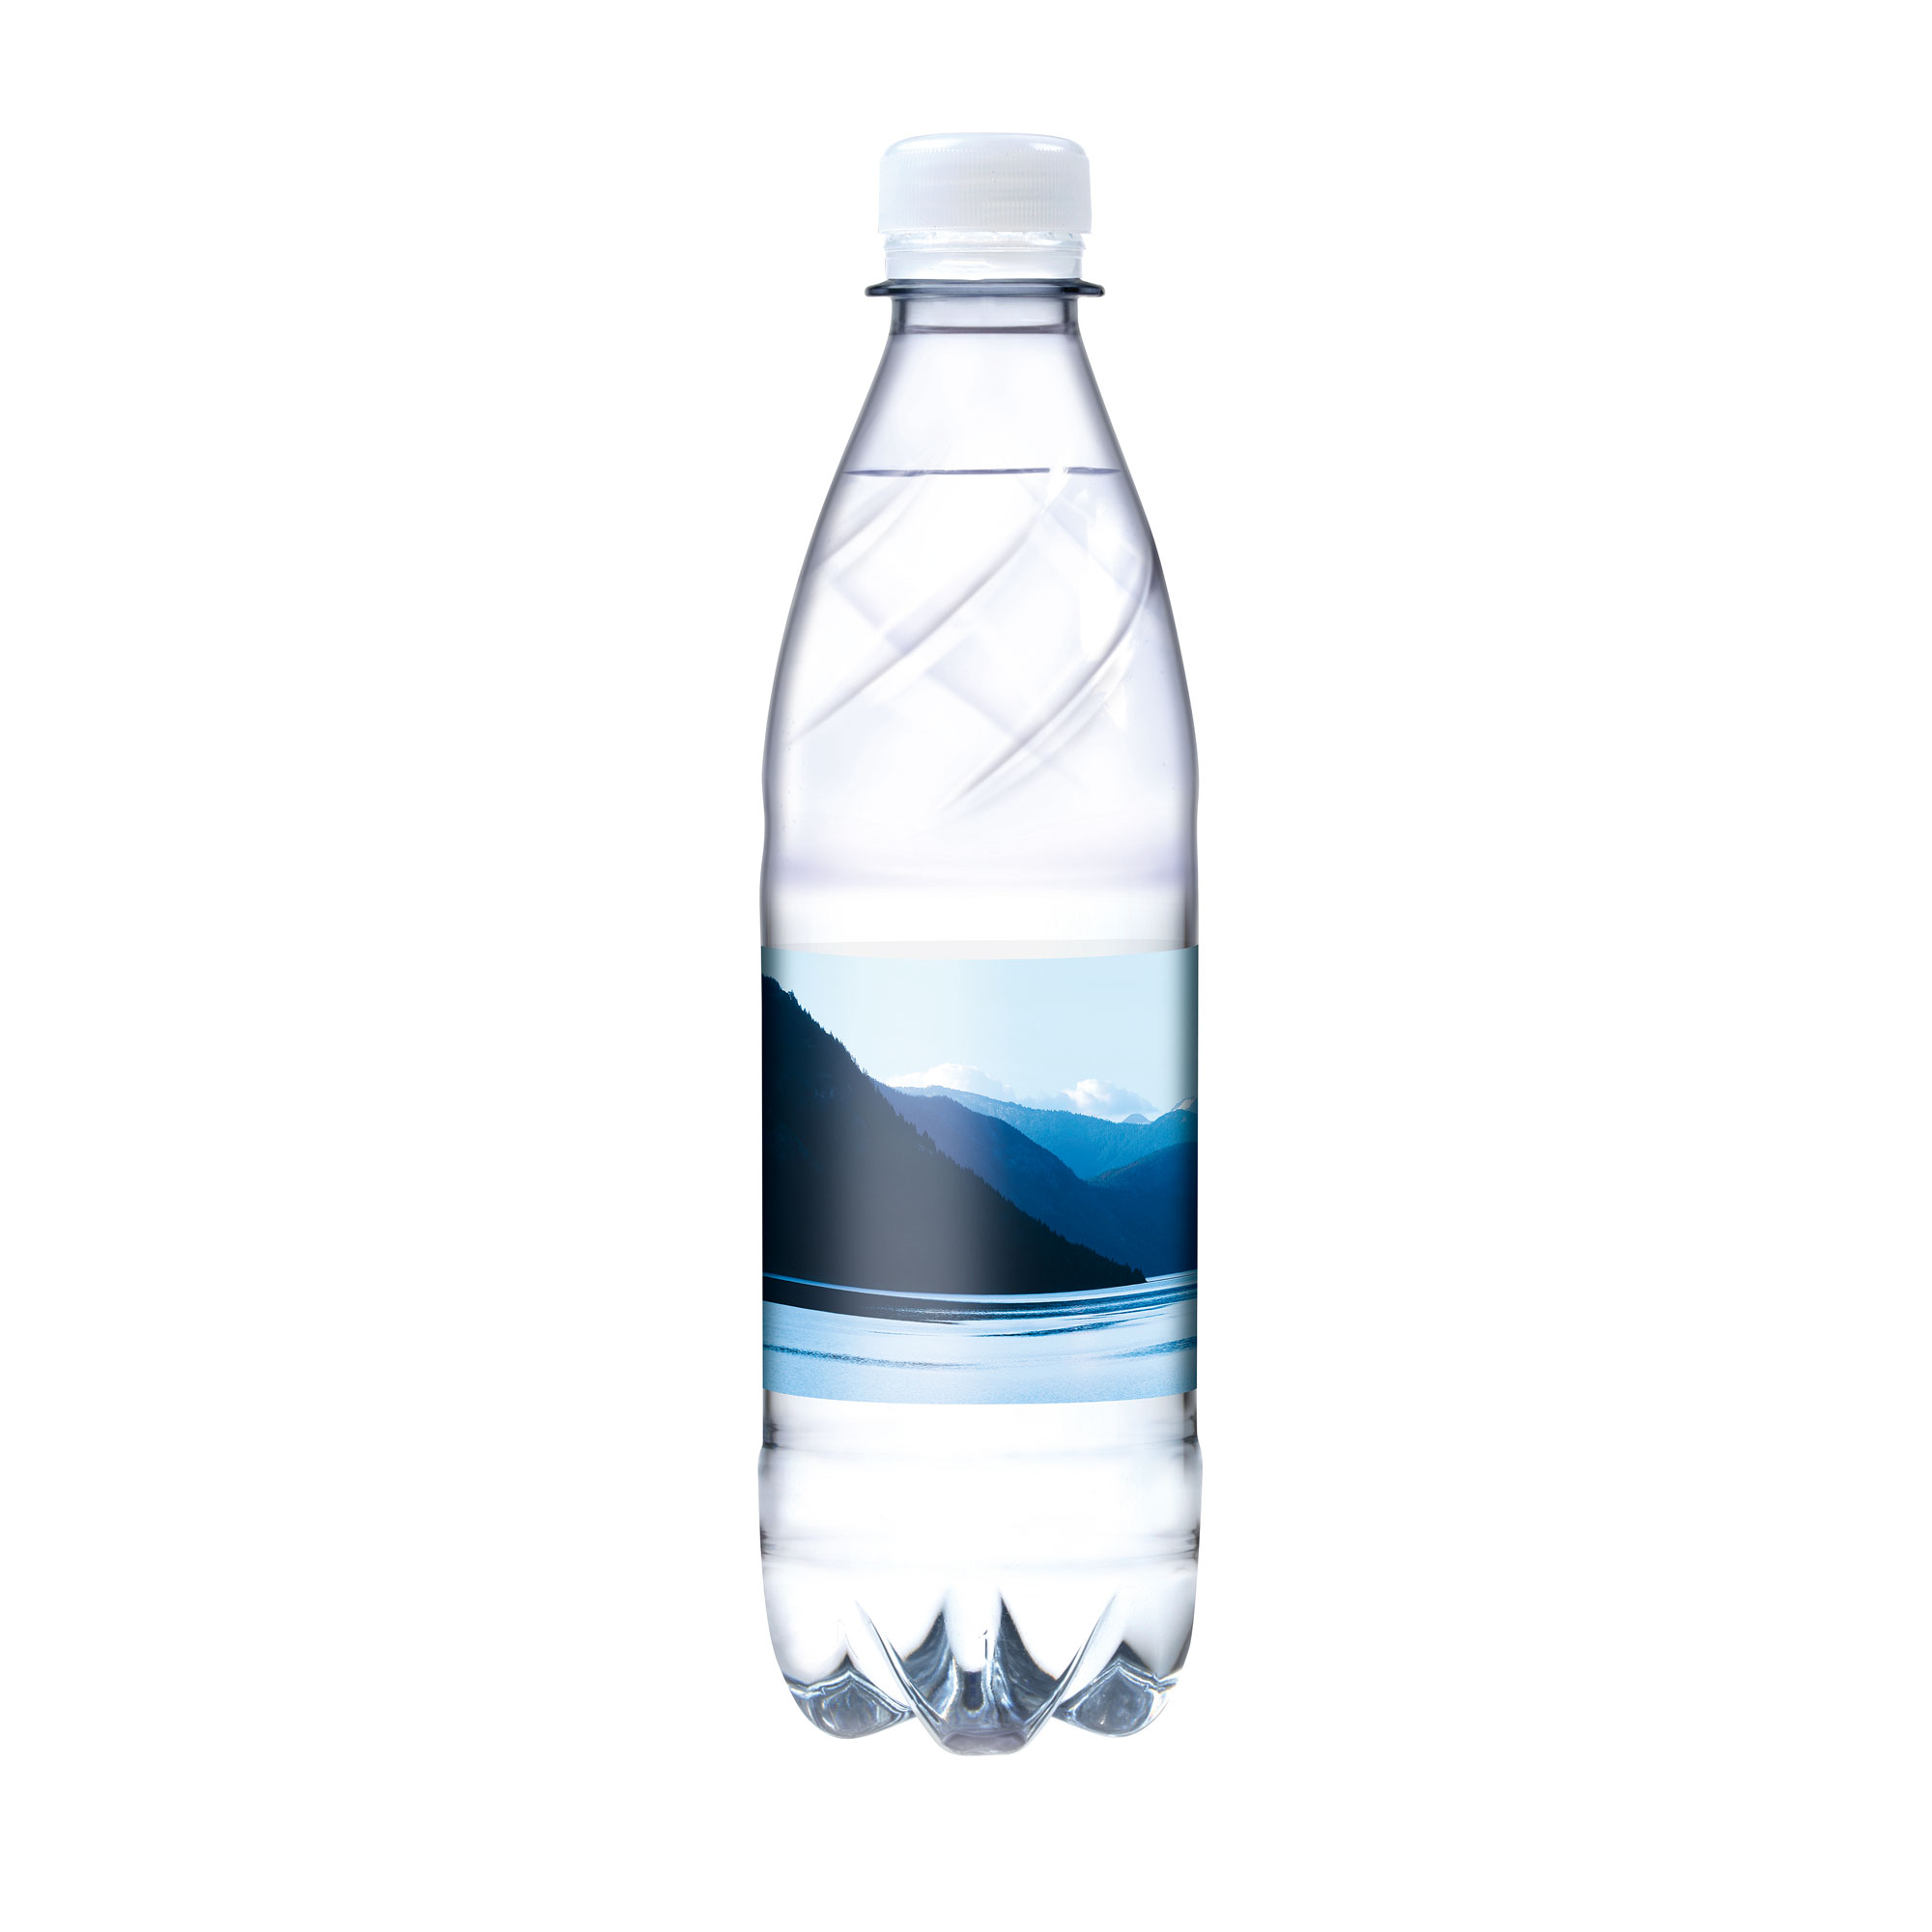 500 ml Tafelwasser sanft prickelnd (Flasche Budget) - Smart Label